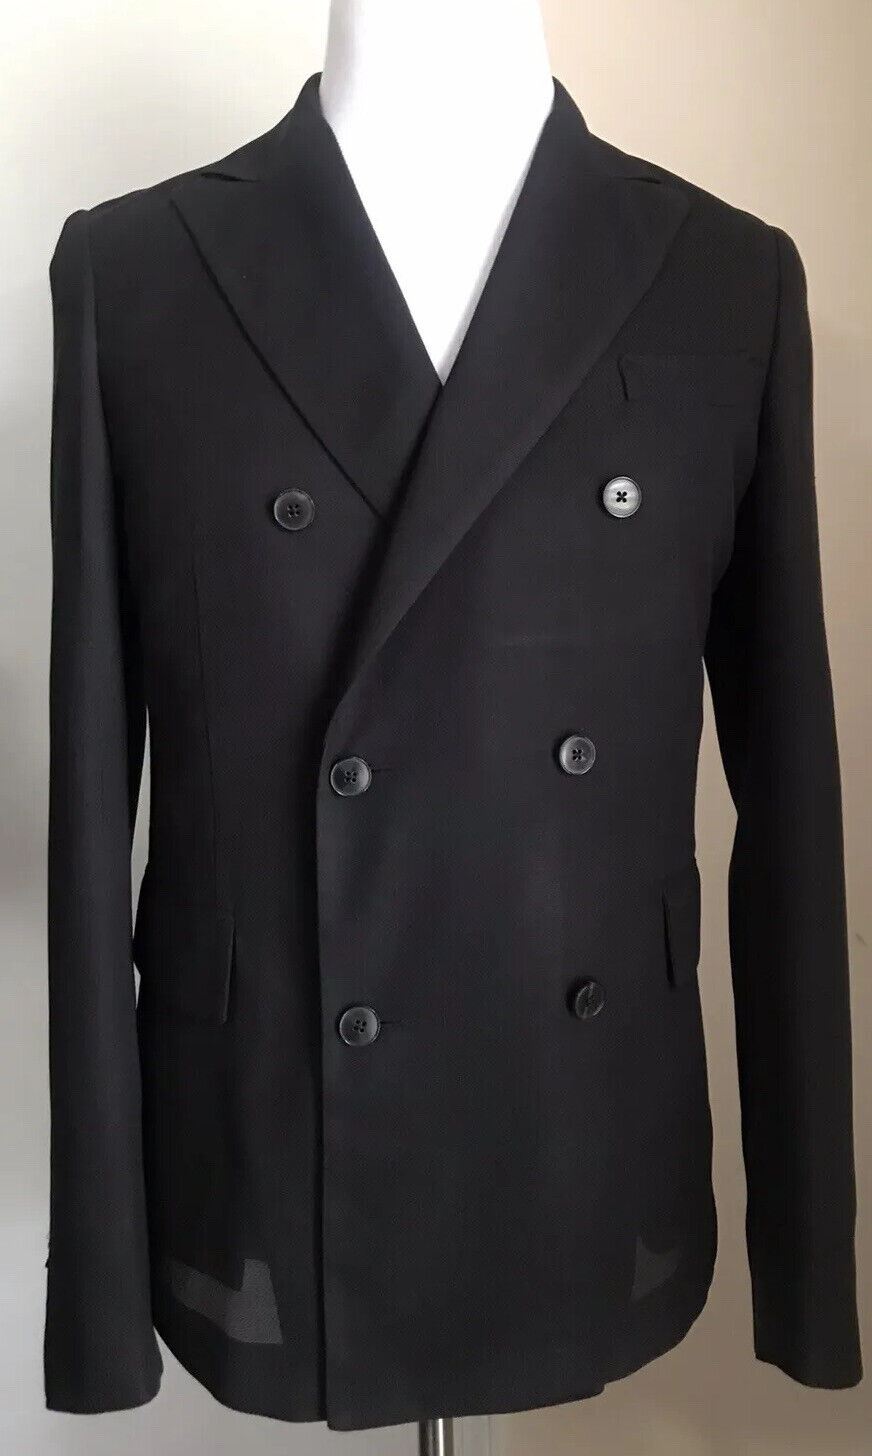 NWT $2295 Valentino Мужское шелковое спортивное пальто Блейзер Куртка черная 34R US/44R EU Италия